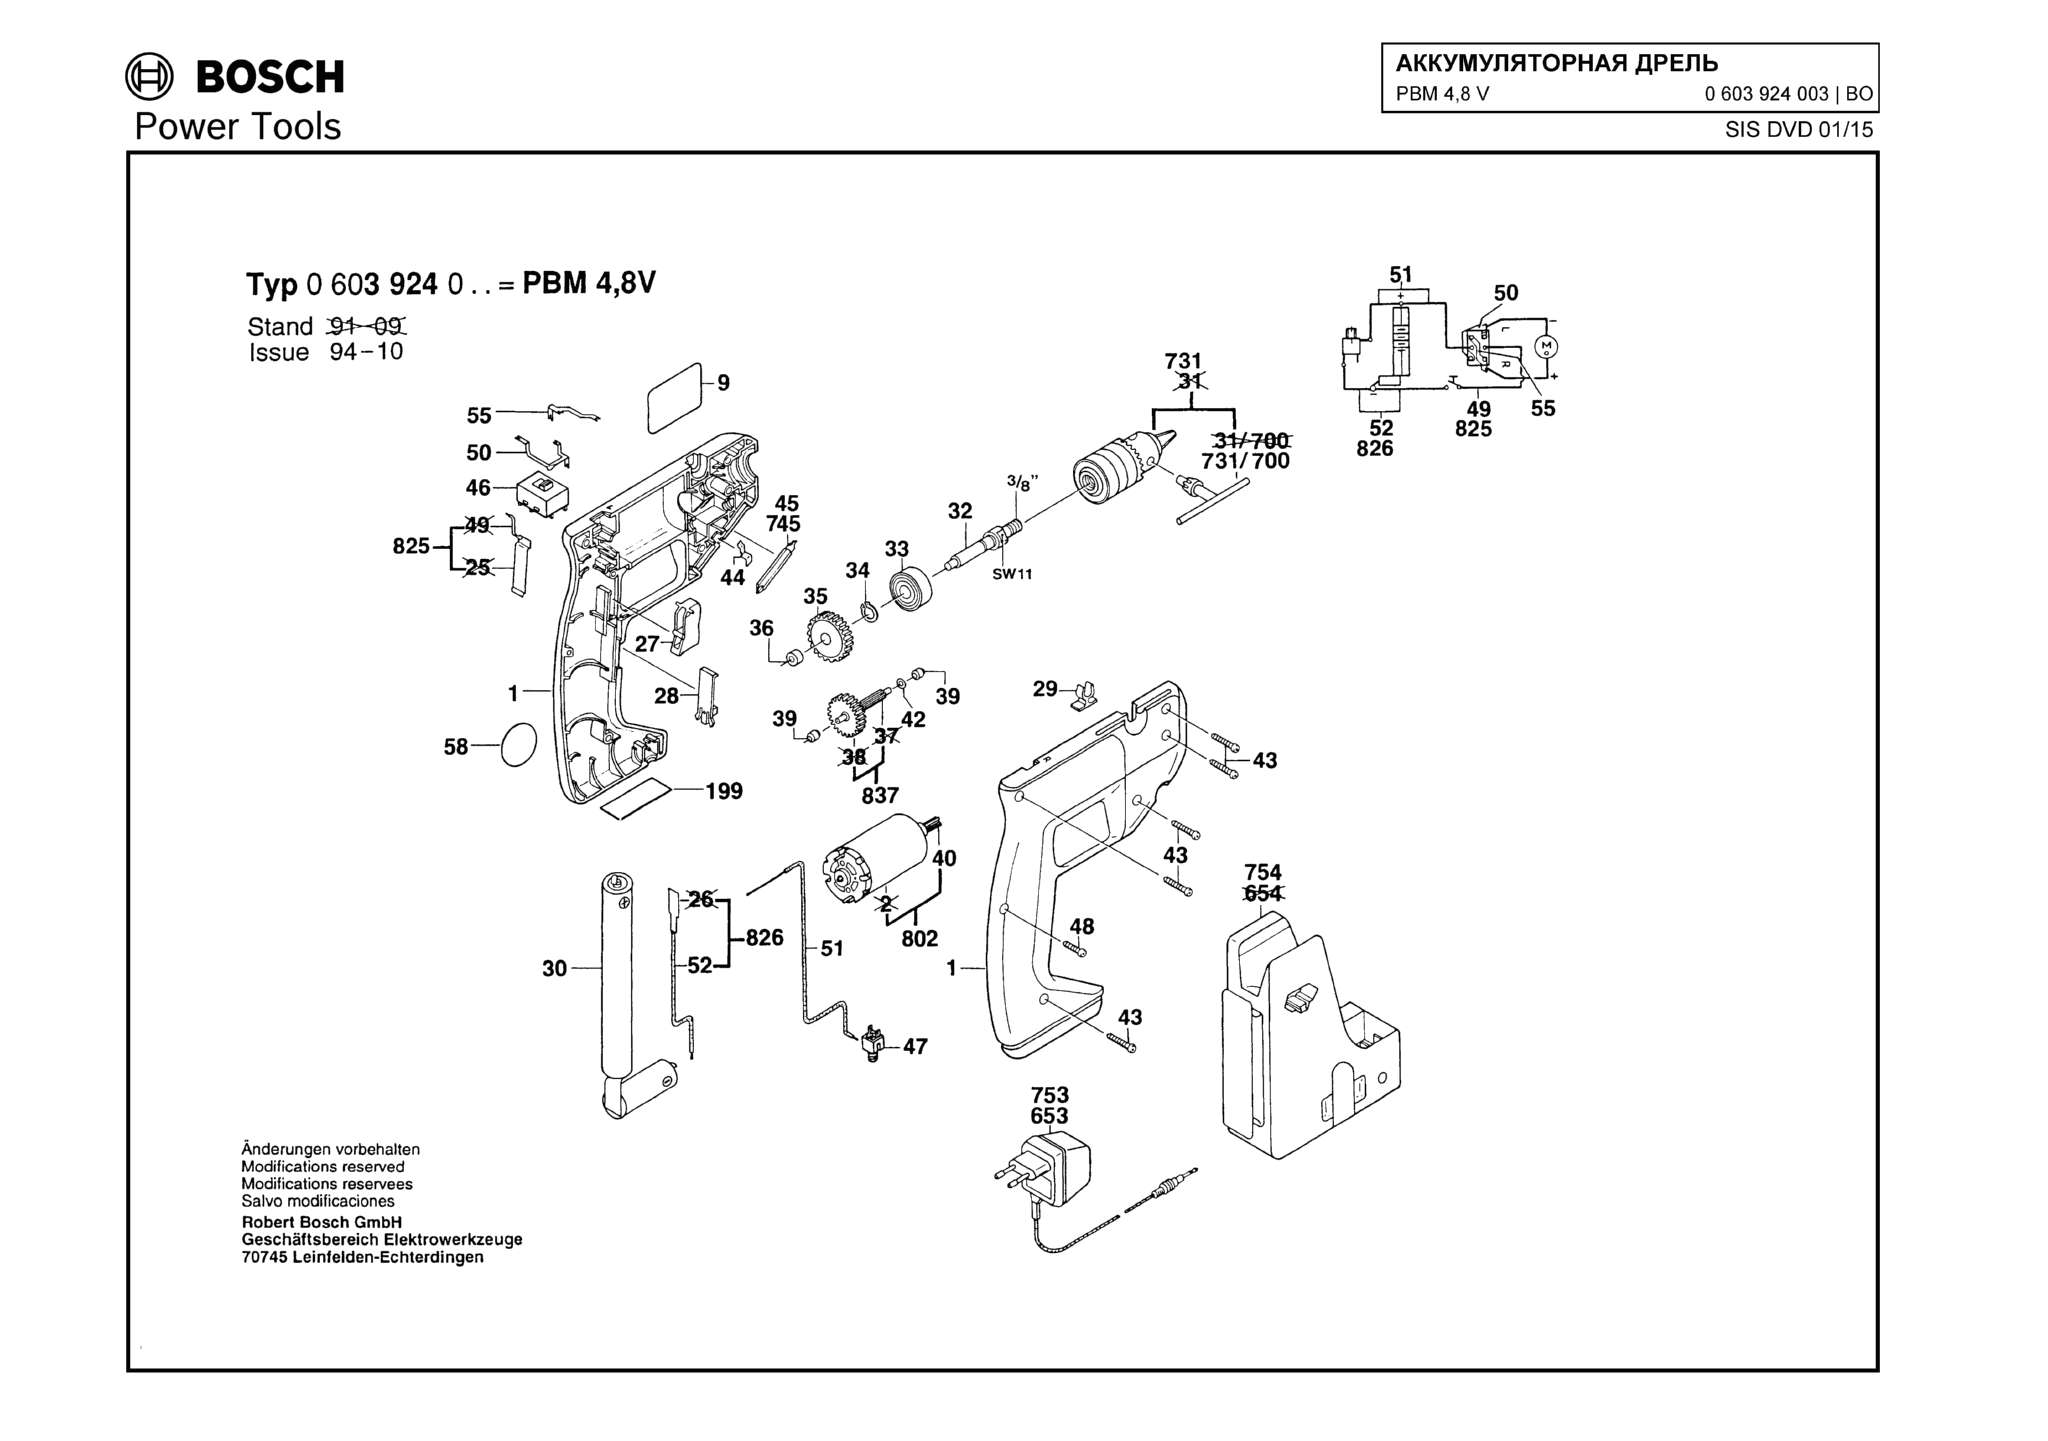 Запчасти, схема и деталировка Bosch PBM 4,8 V (ТИП 0603924003)